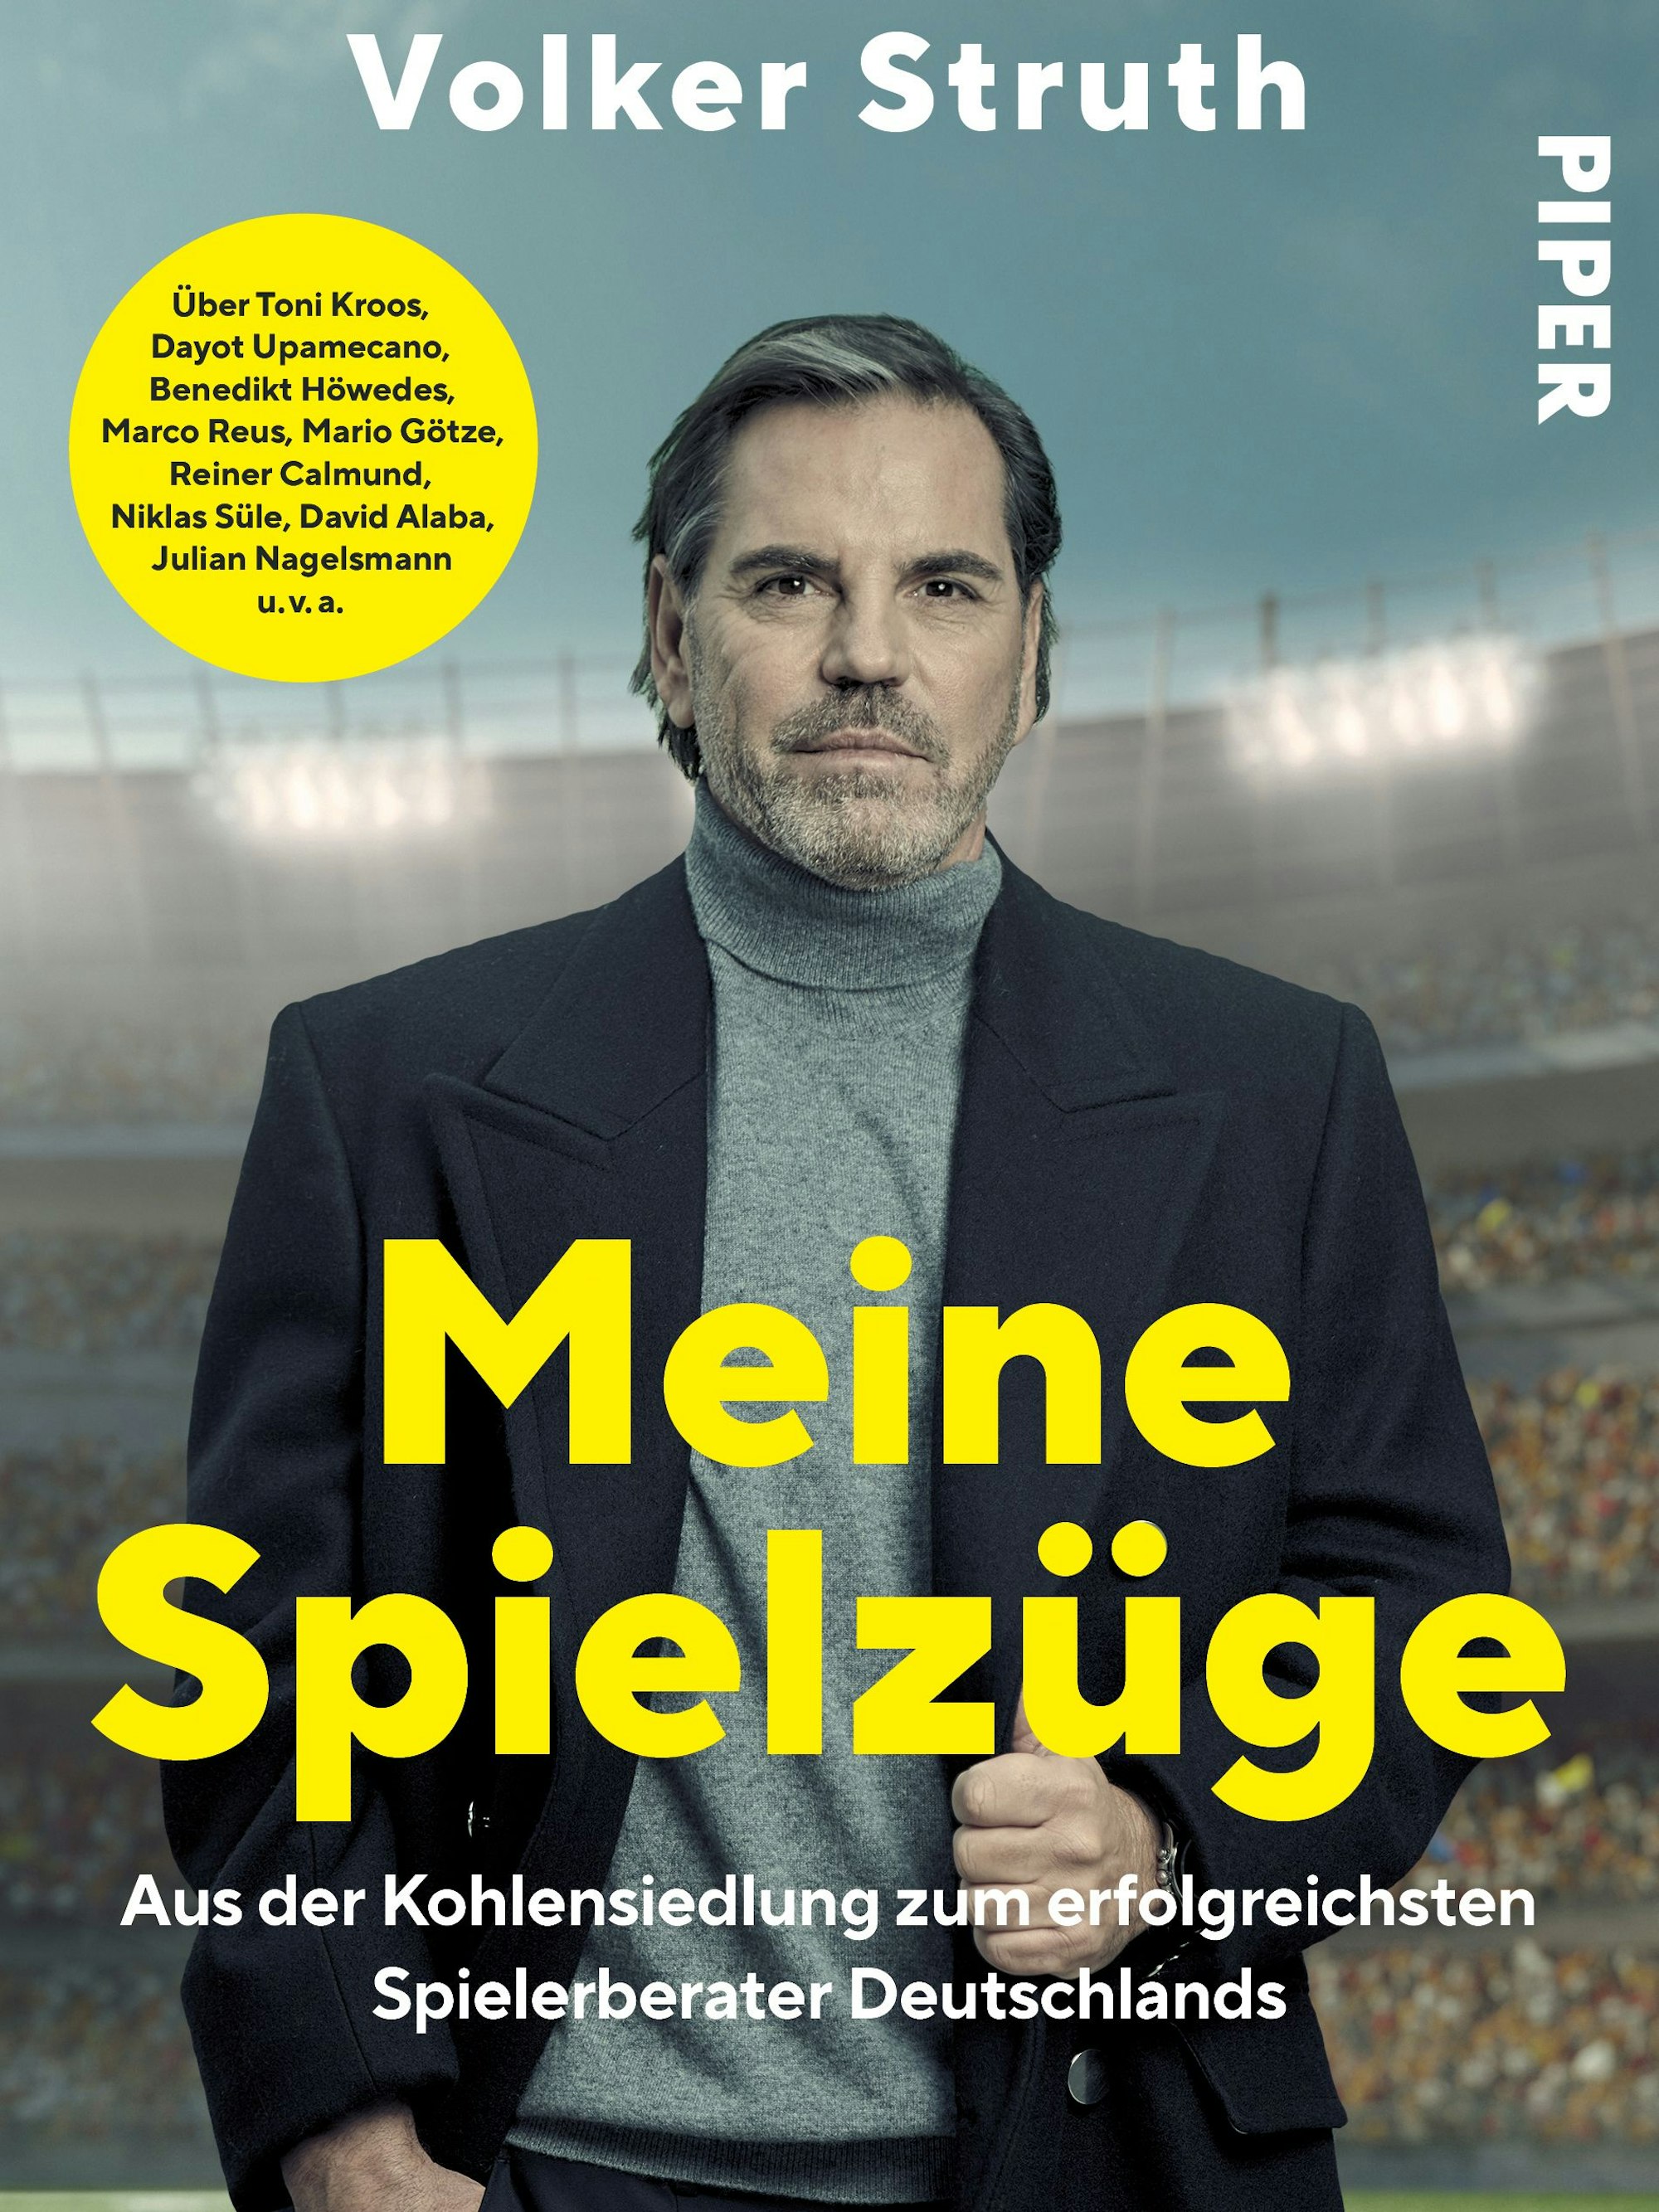 Das Cover der Biografie von Volker Struth.